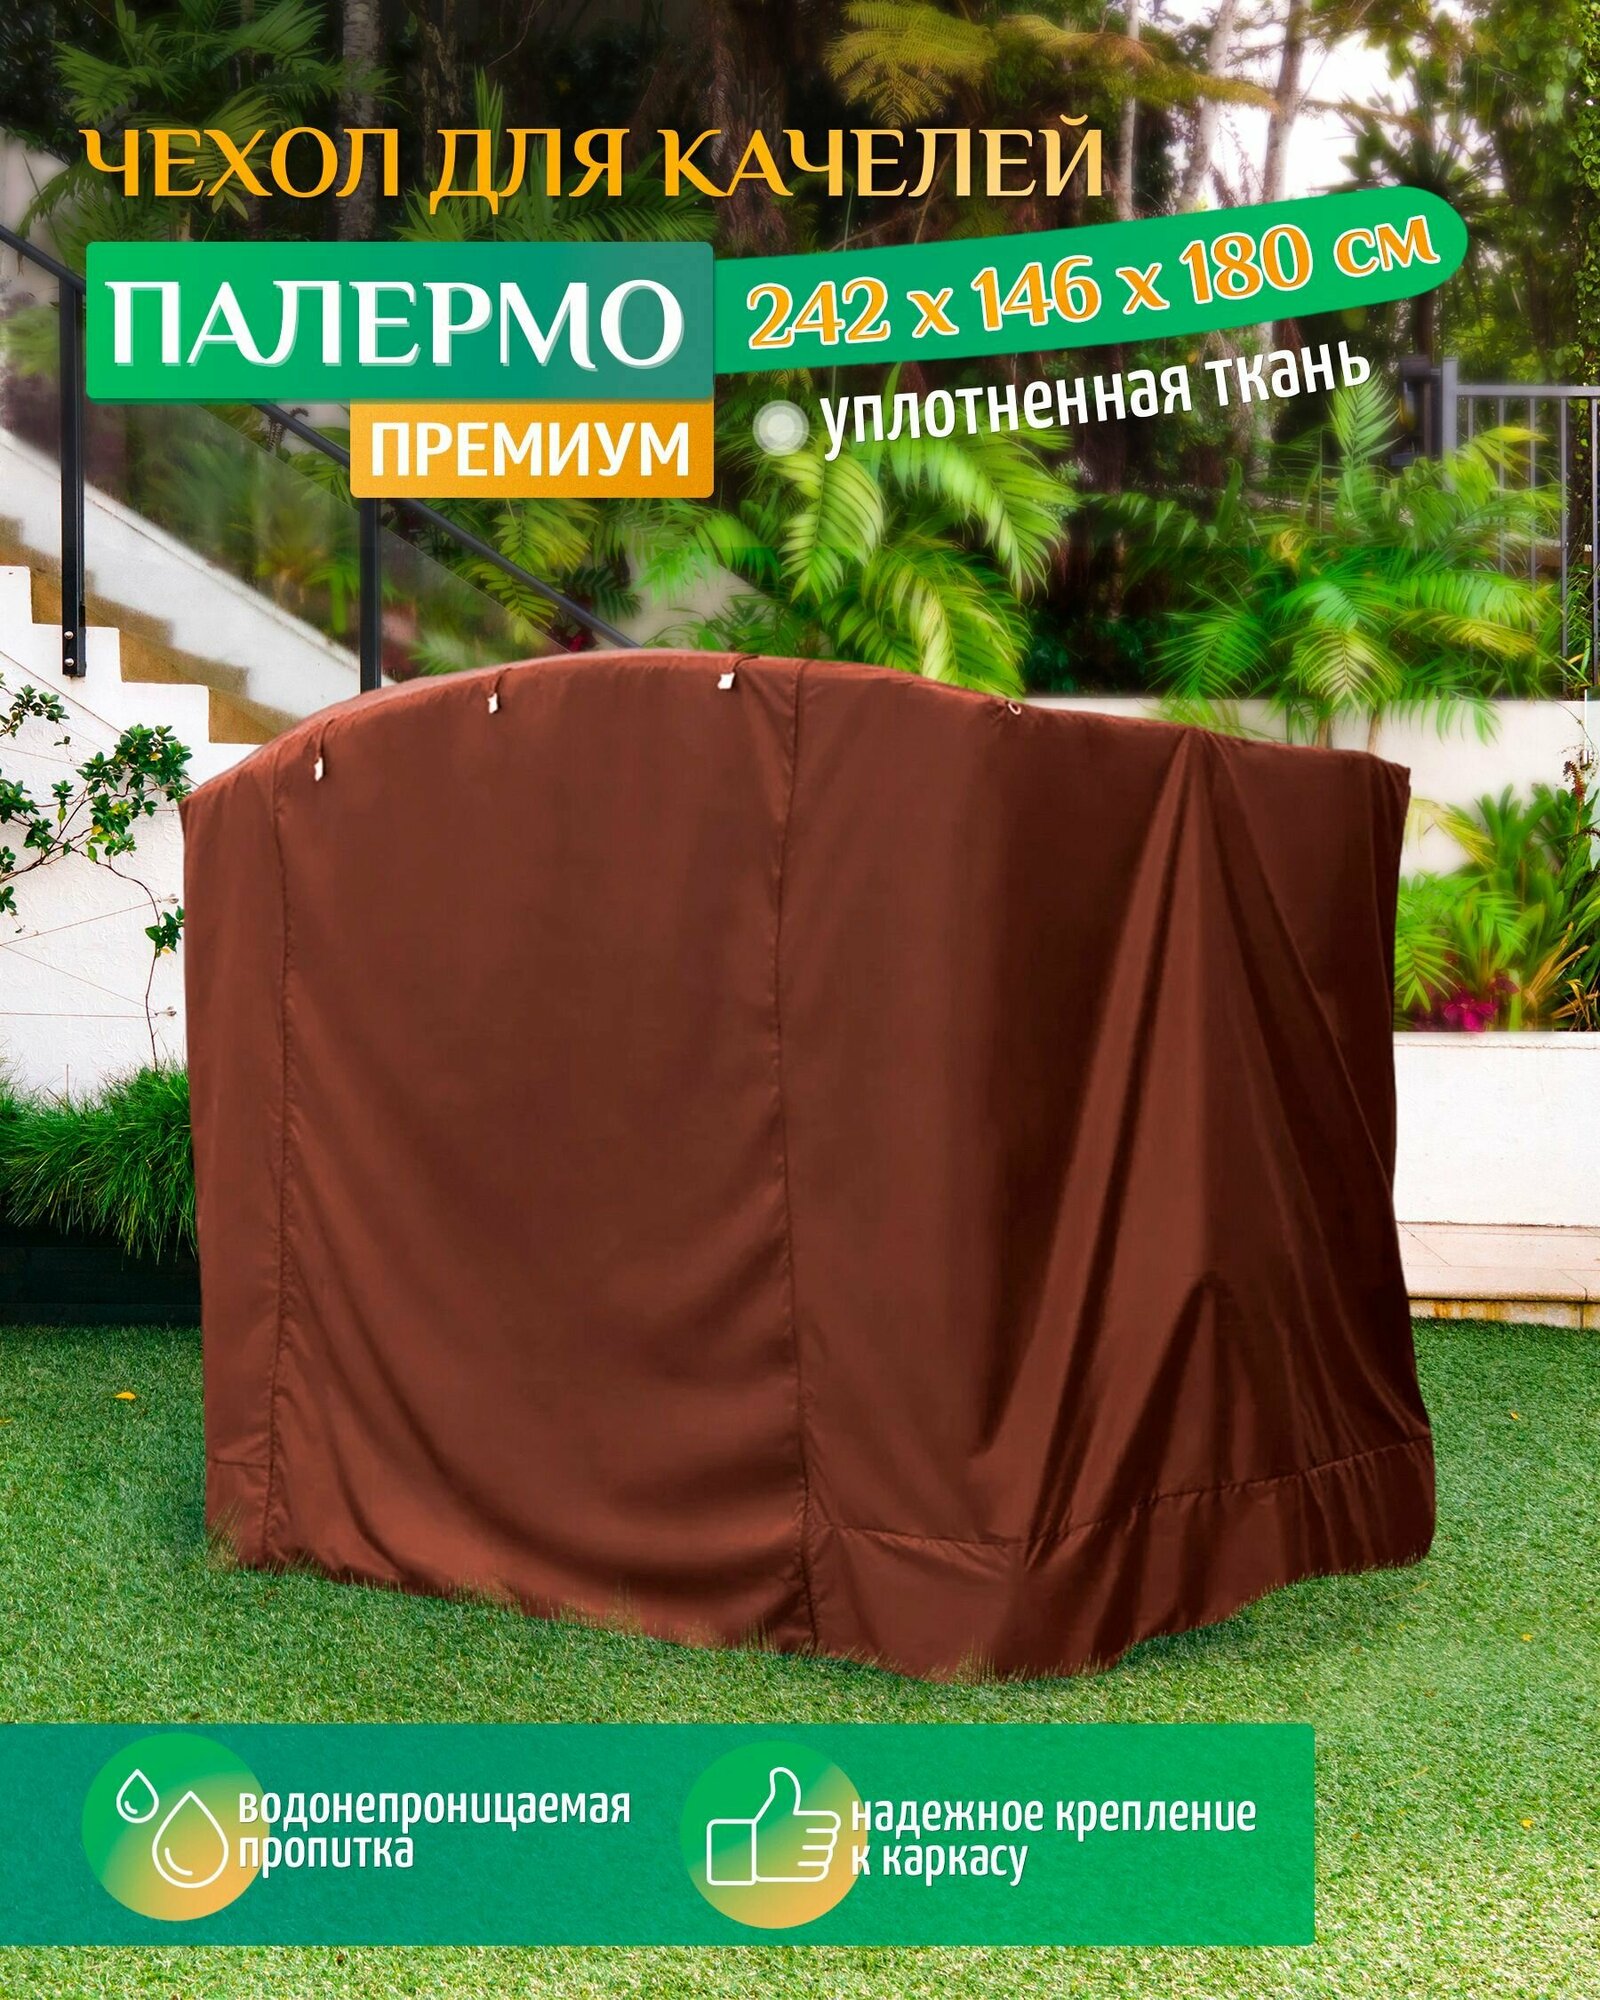 Чехол для качелей Палермо премиум (242х146х180 см) коричневый